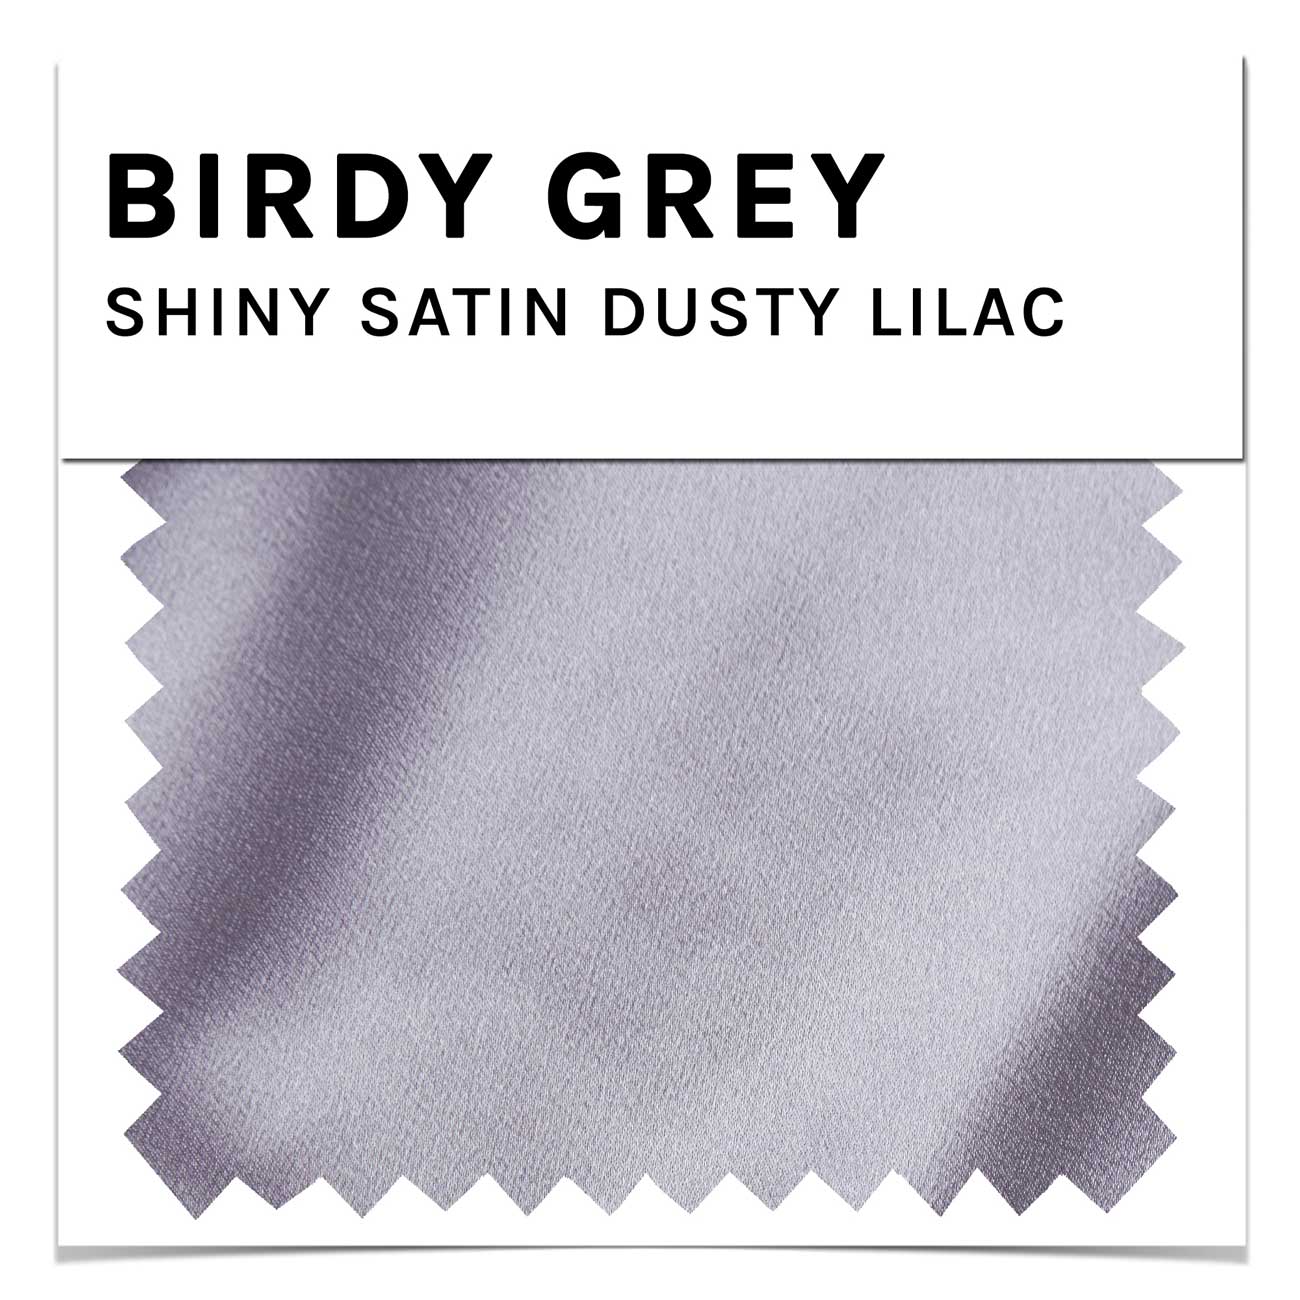 Swatch - Shiny Satin in Dusty Lilac by Birdy Grey